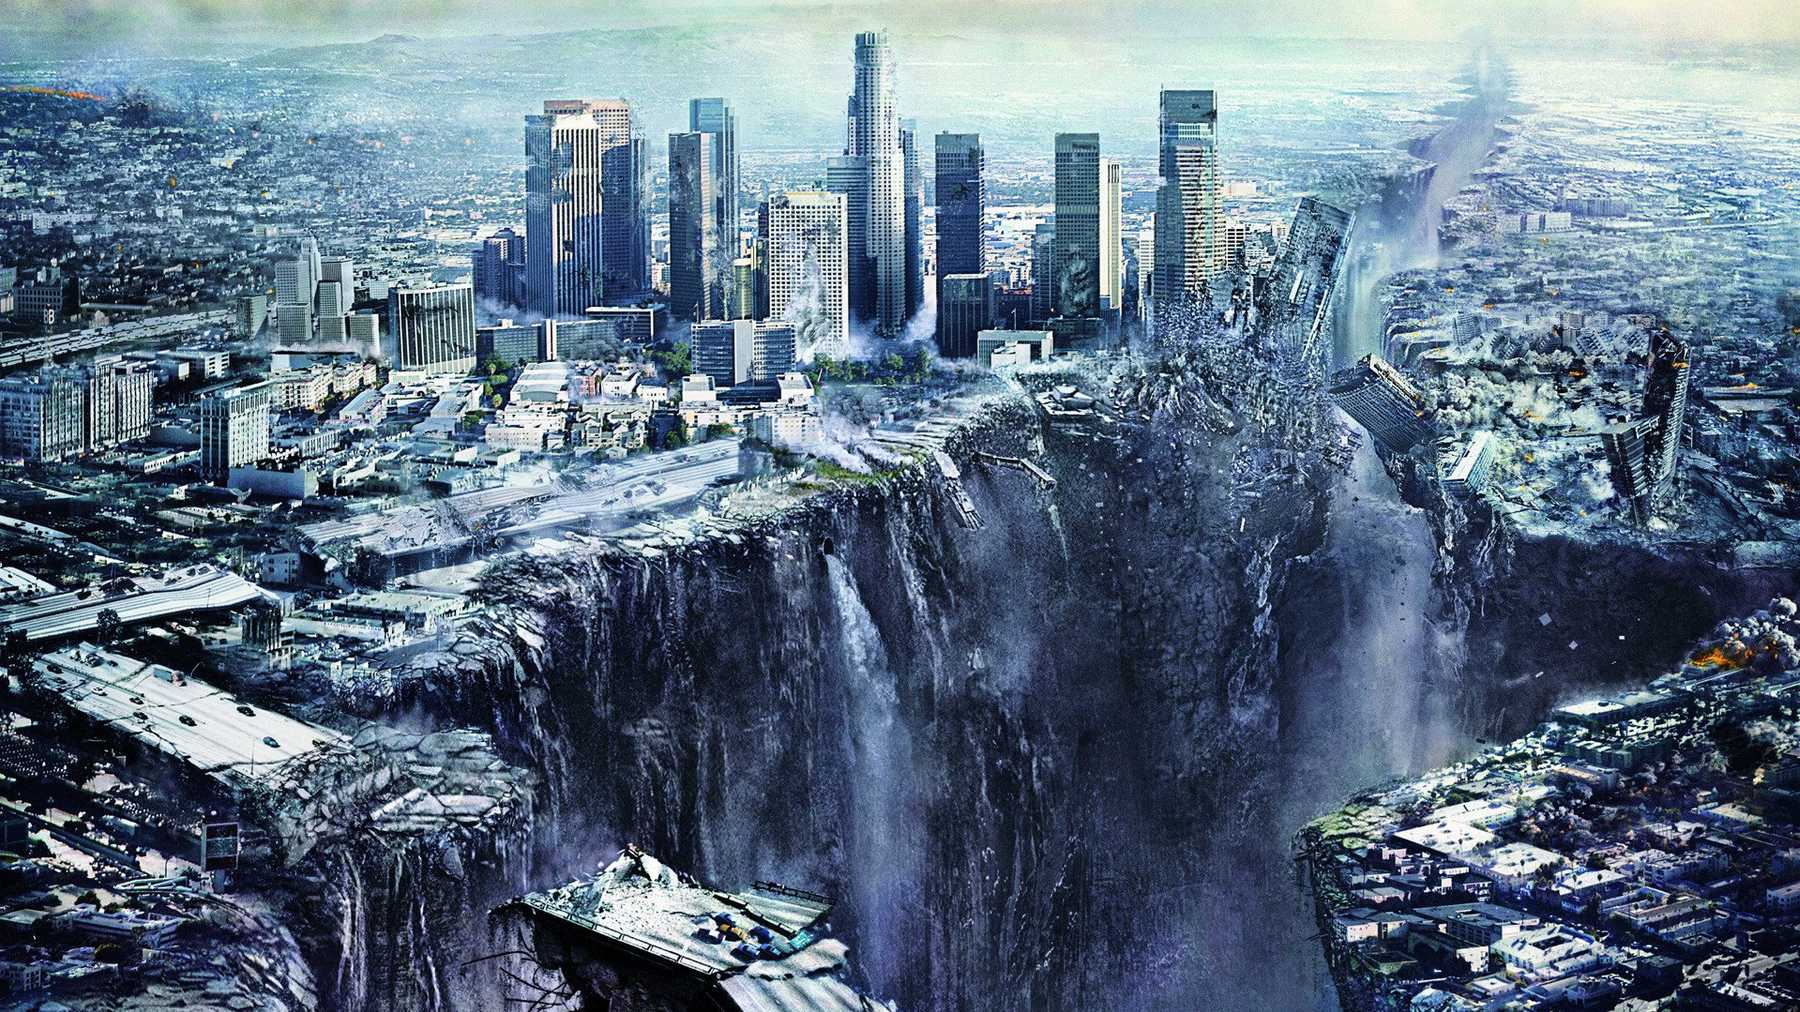 Conheça a verdade sobre a profecia que previa o fim do mundo em 2012